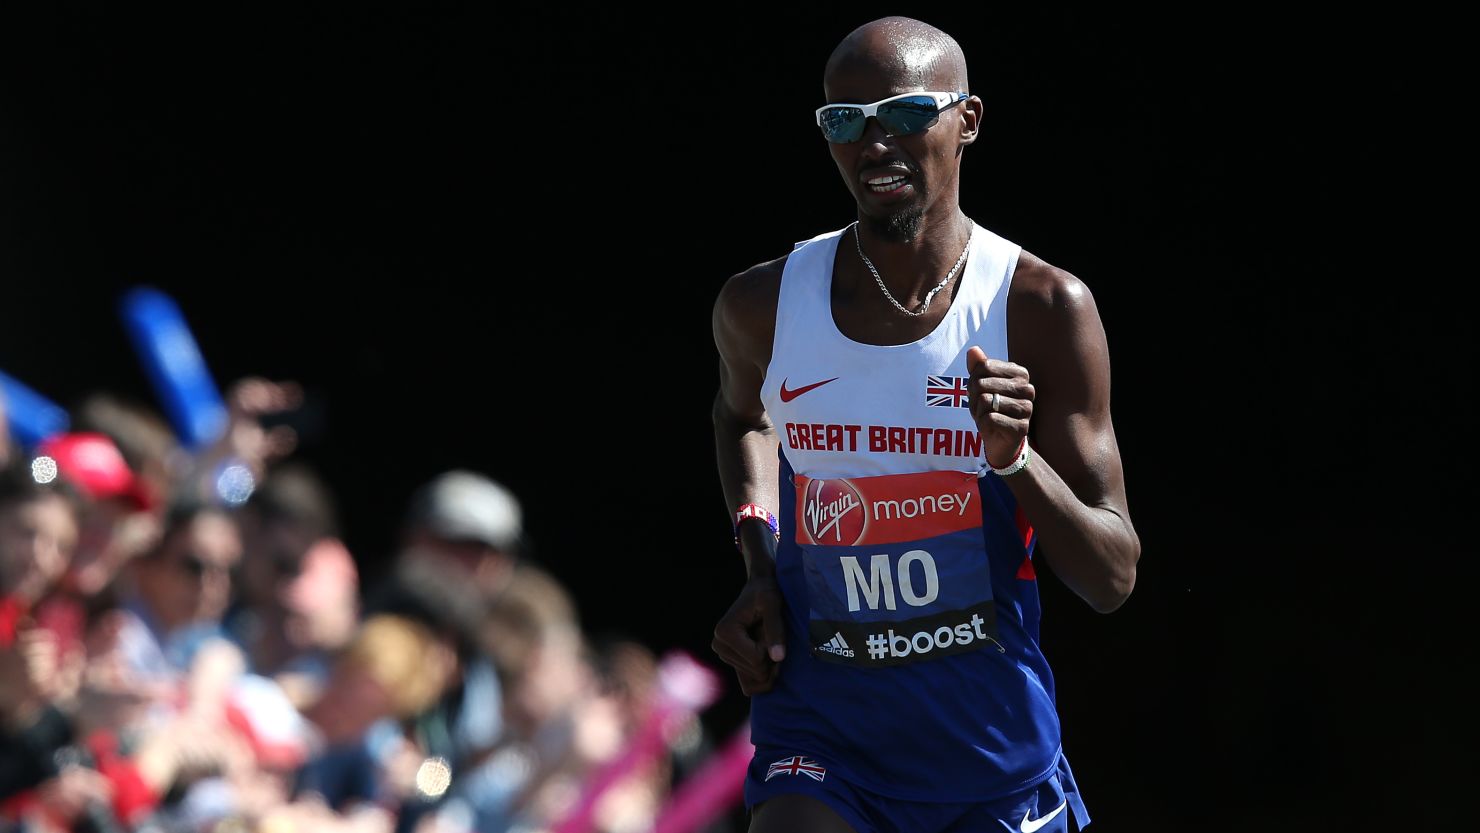 Farah made his marathon debut in London in 2014. 